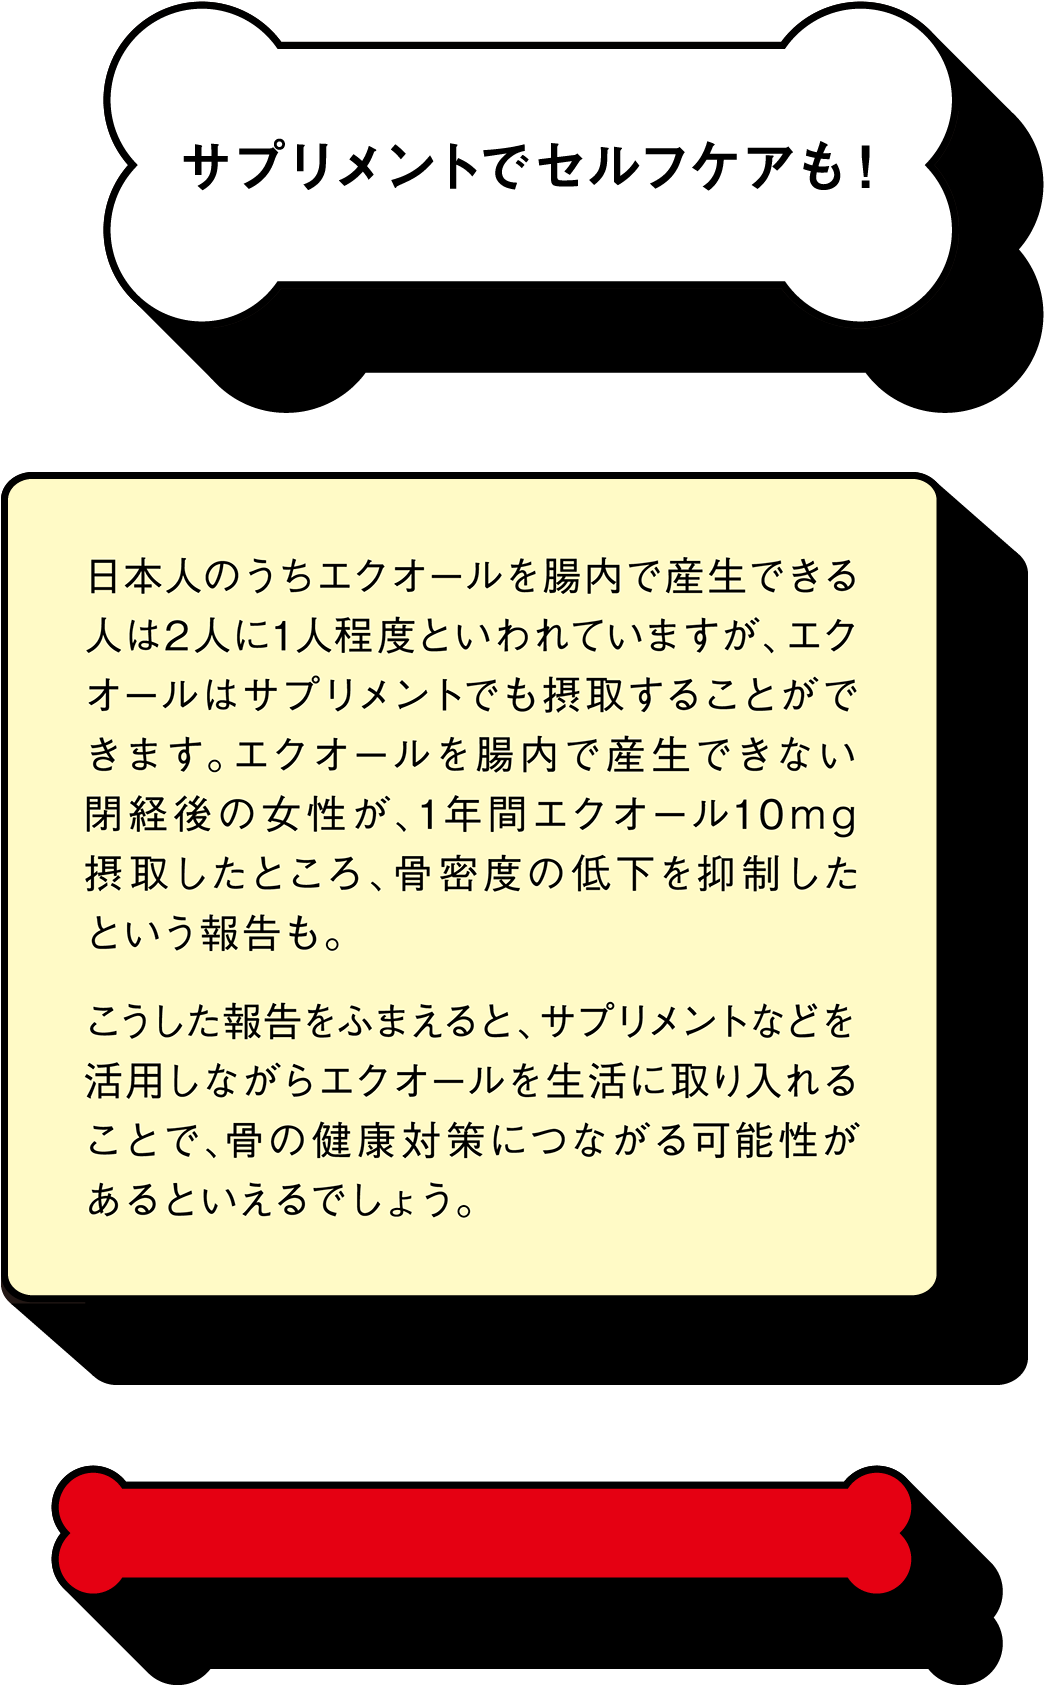 サプリメントでセルフケアも！ 日本人のうちエクオールを腸内で産生できる人は2人に1人程度といわれていますが、エクオールはサプリメントでも摂取することができます。エクオールを腸内で産生できない閉経後の女性が、1年間エクオール10mg摂取したところ、骨密度の低下を抑制したという報告も。こうした報告をふまえると、サプリメントなどを活用しながらエクオールを生活に取り入れることで、骨の健康対策につながる可能性があるといえるでしょう。